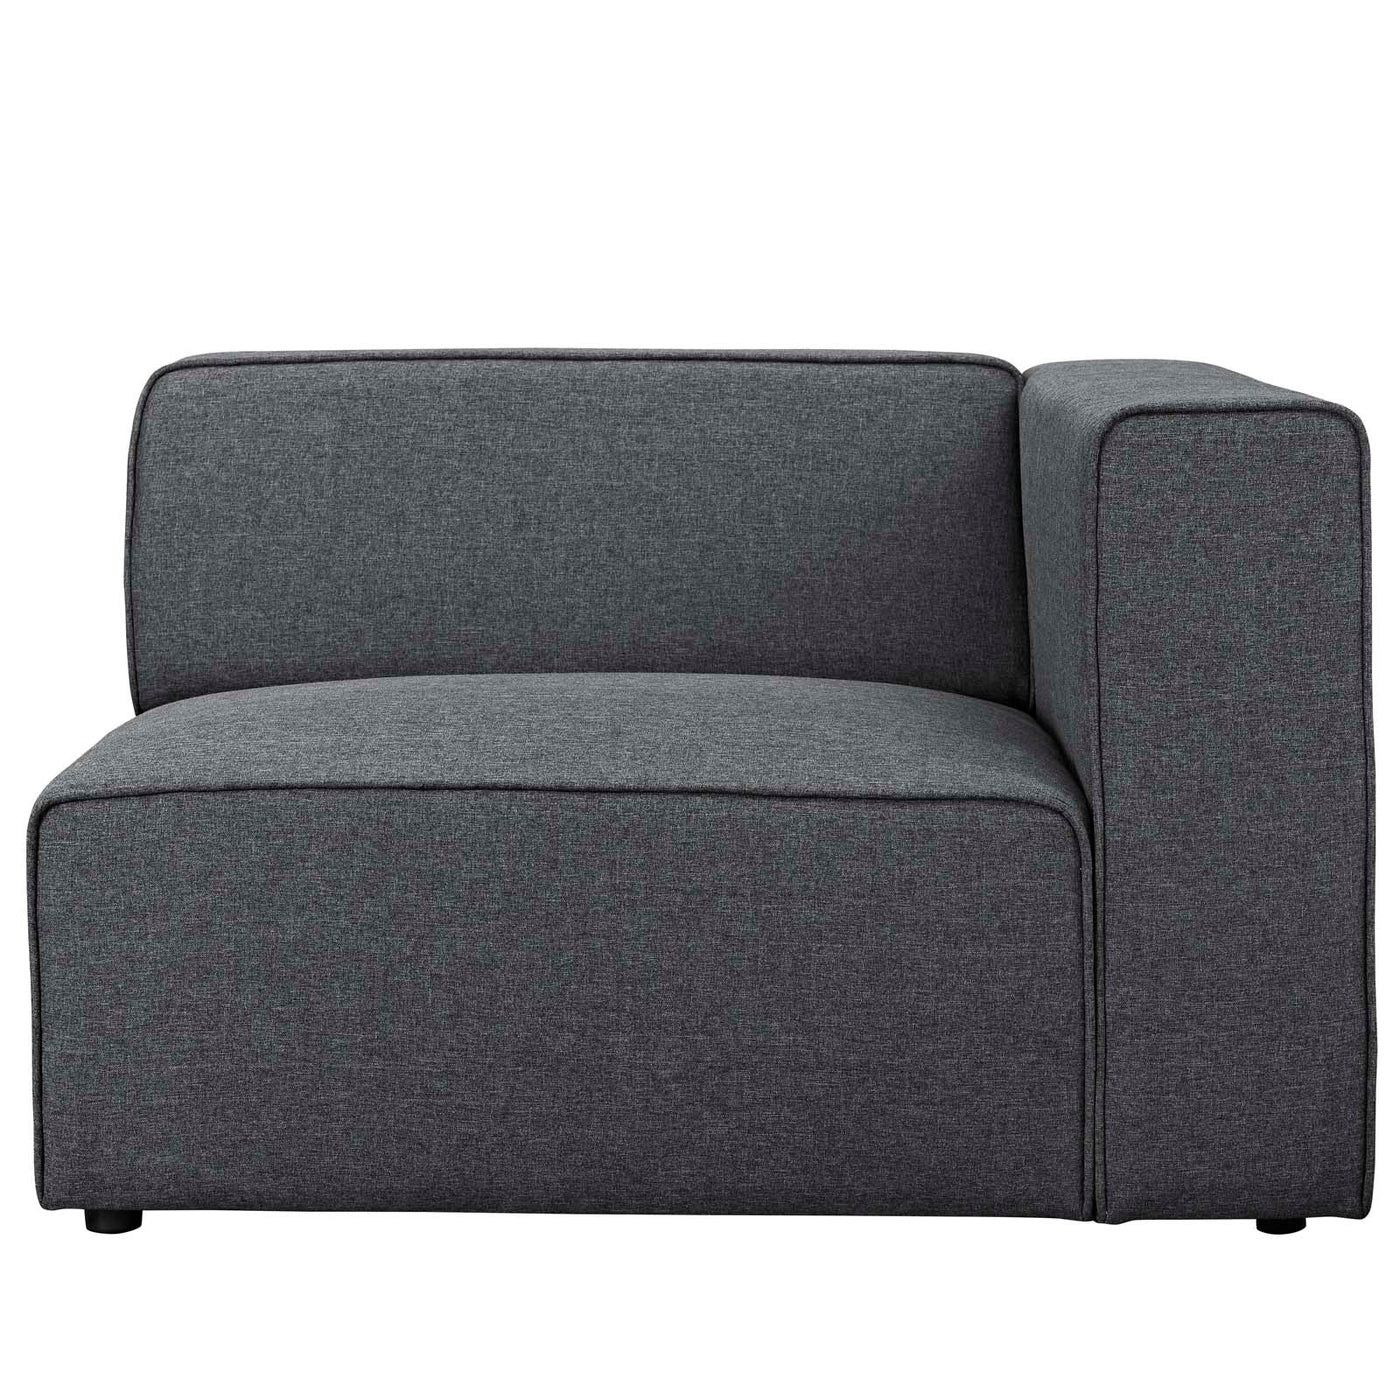 Mingle Fabric Right-Facing Sofa